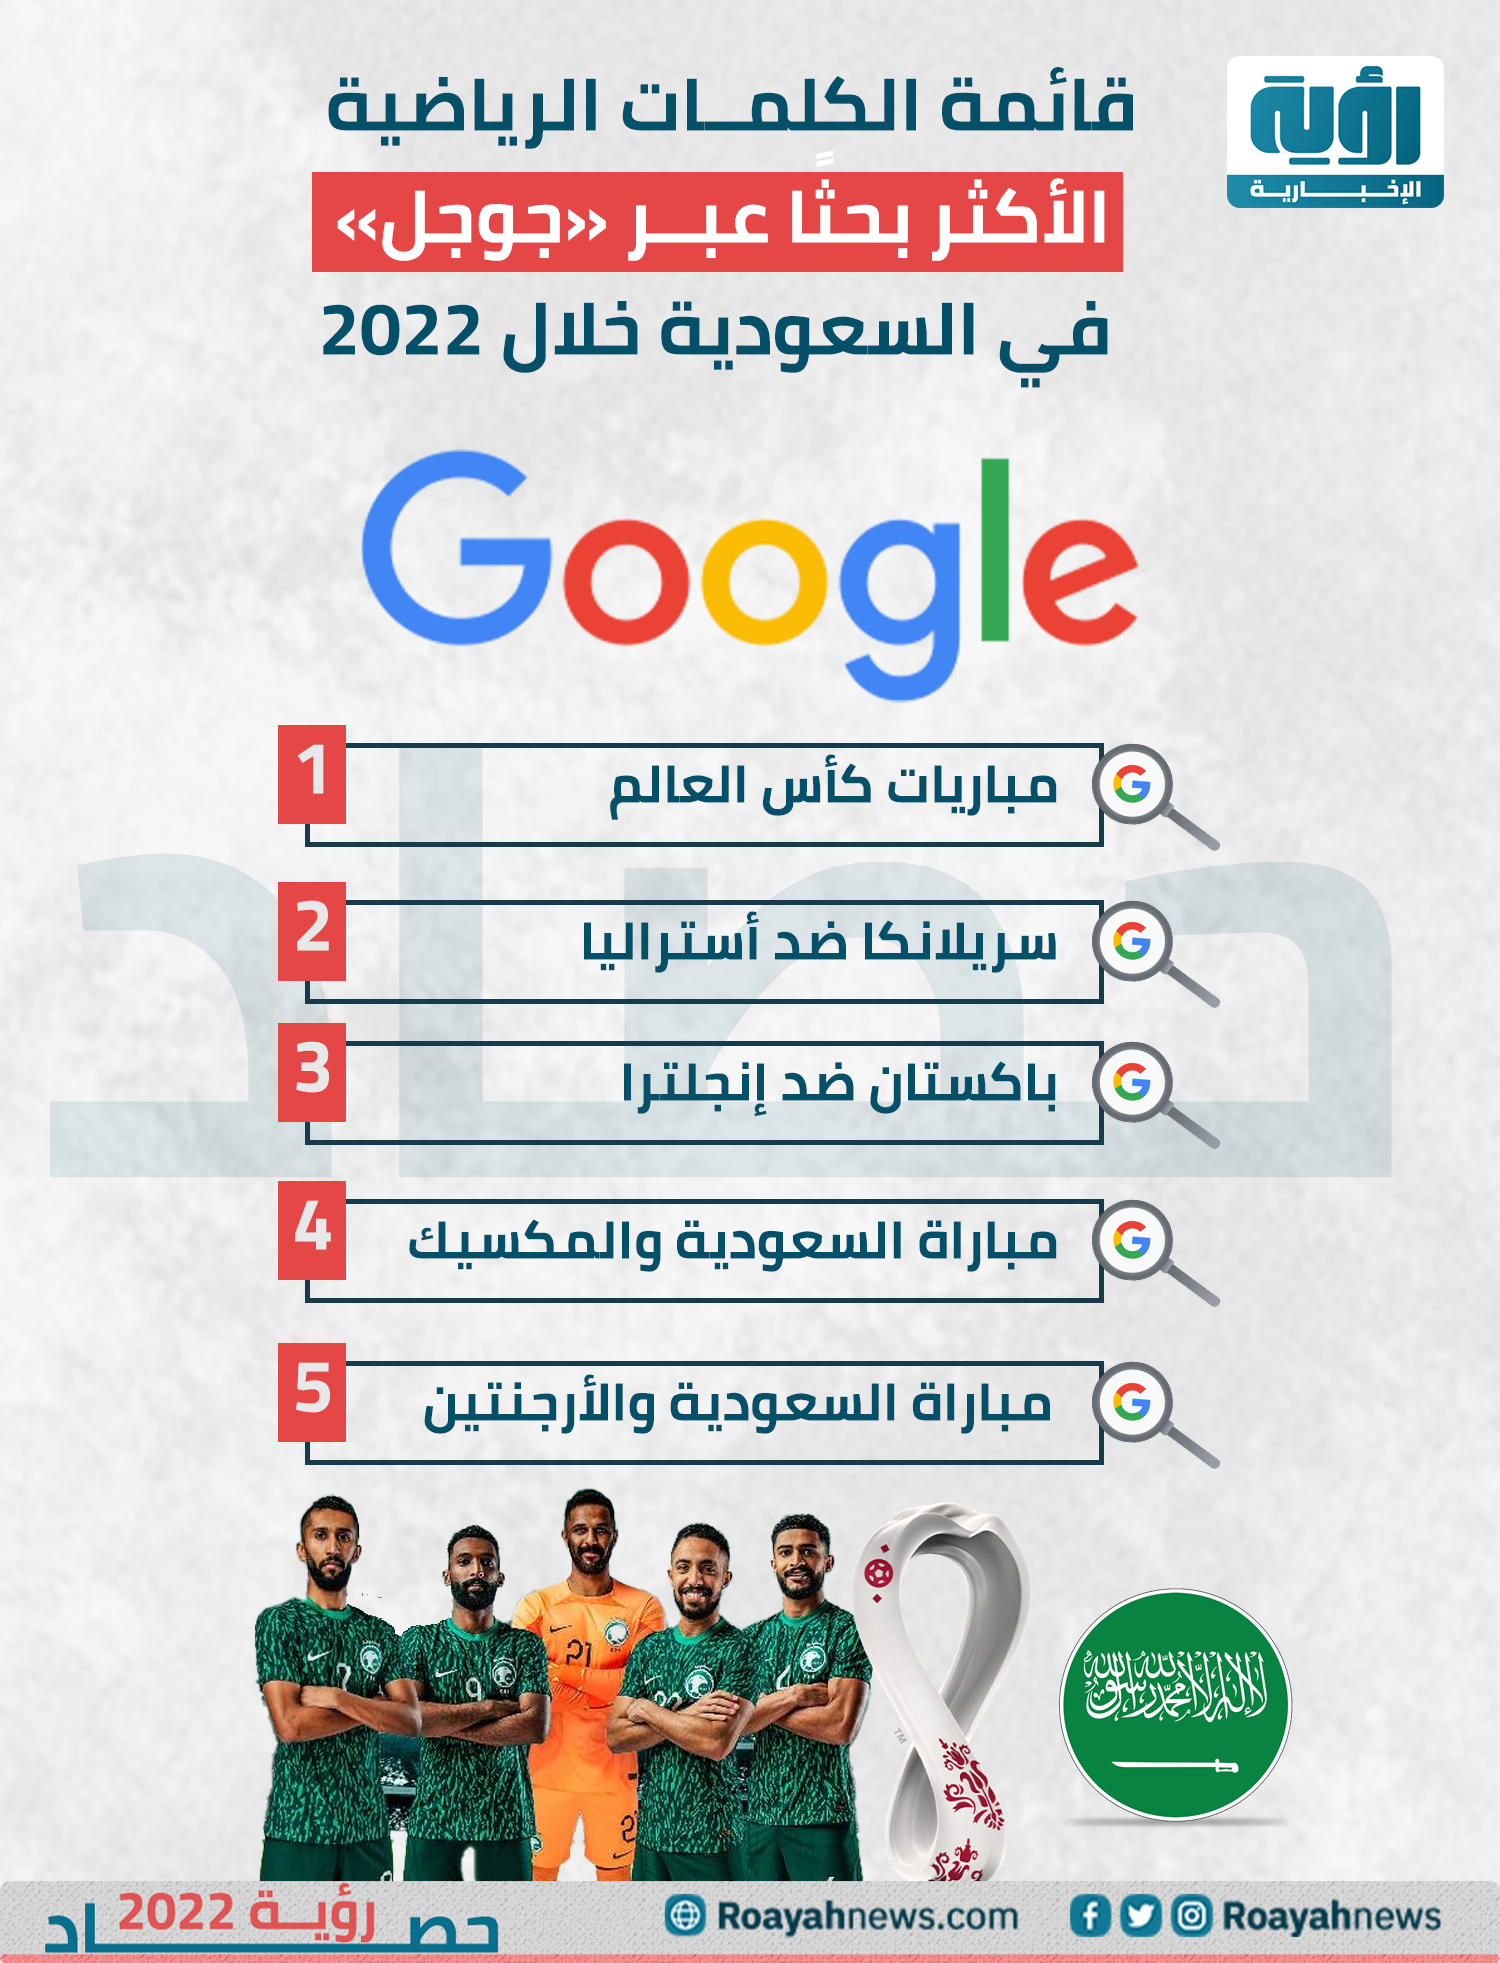 قائمة الكلمات الرياضية الأكثر بحثًا عبر جوجل في السعودية خلال 2022